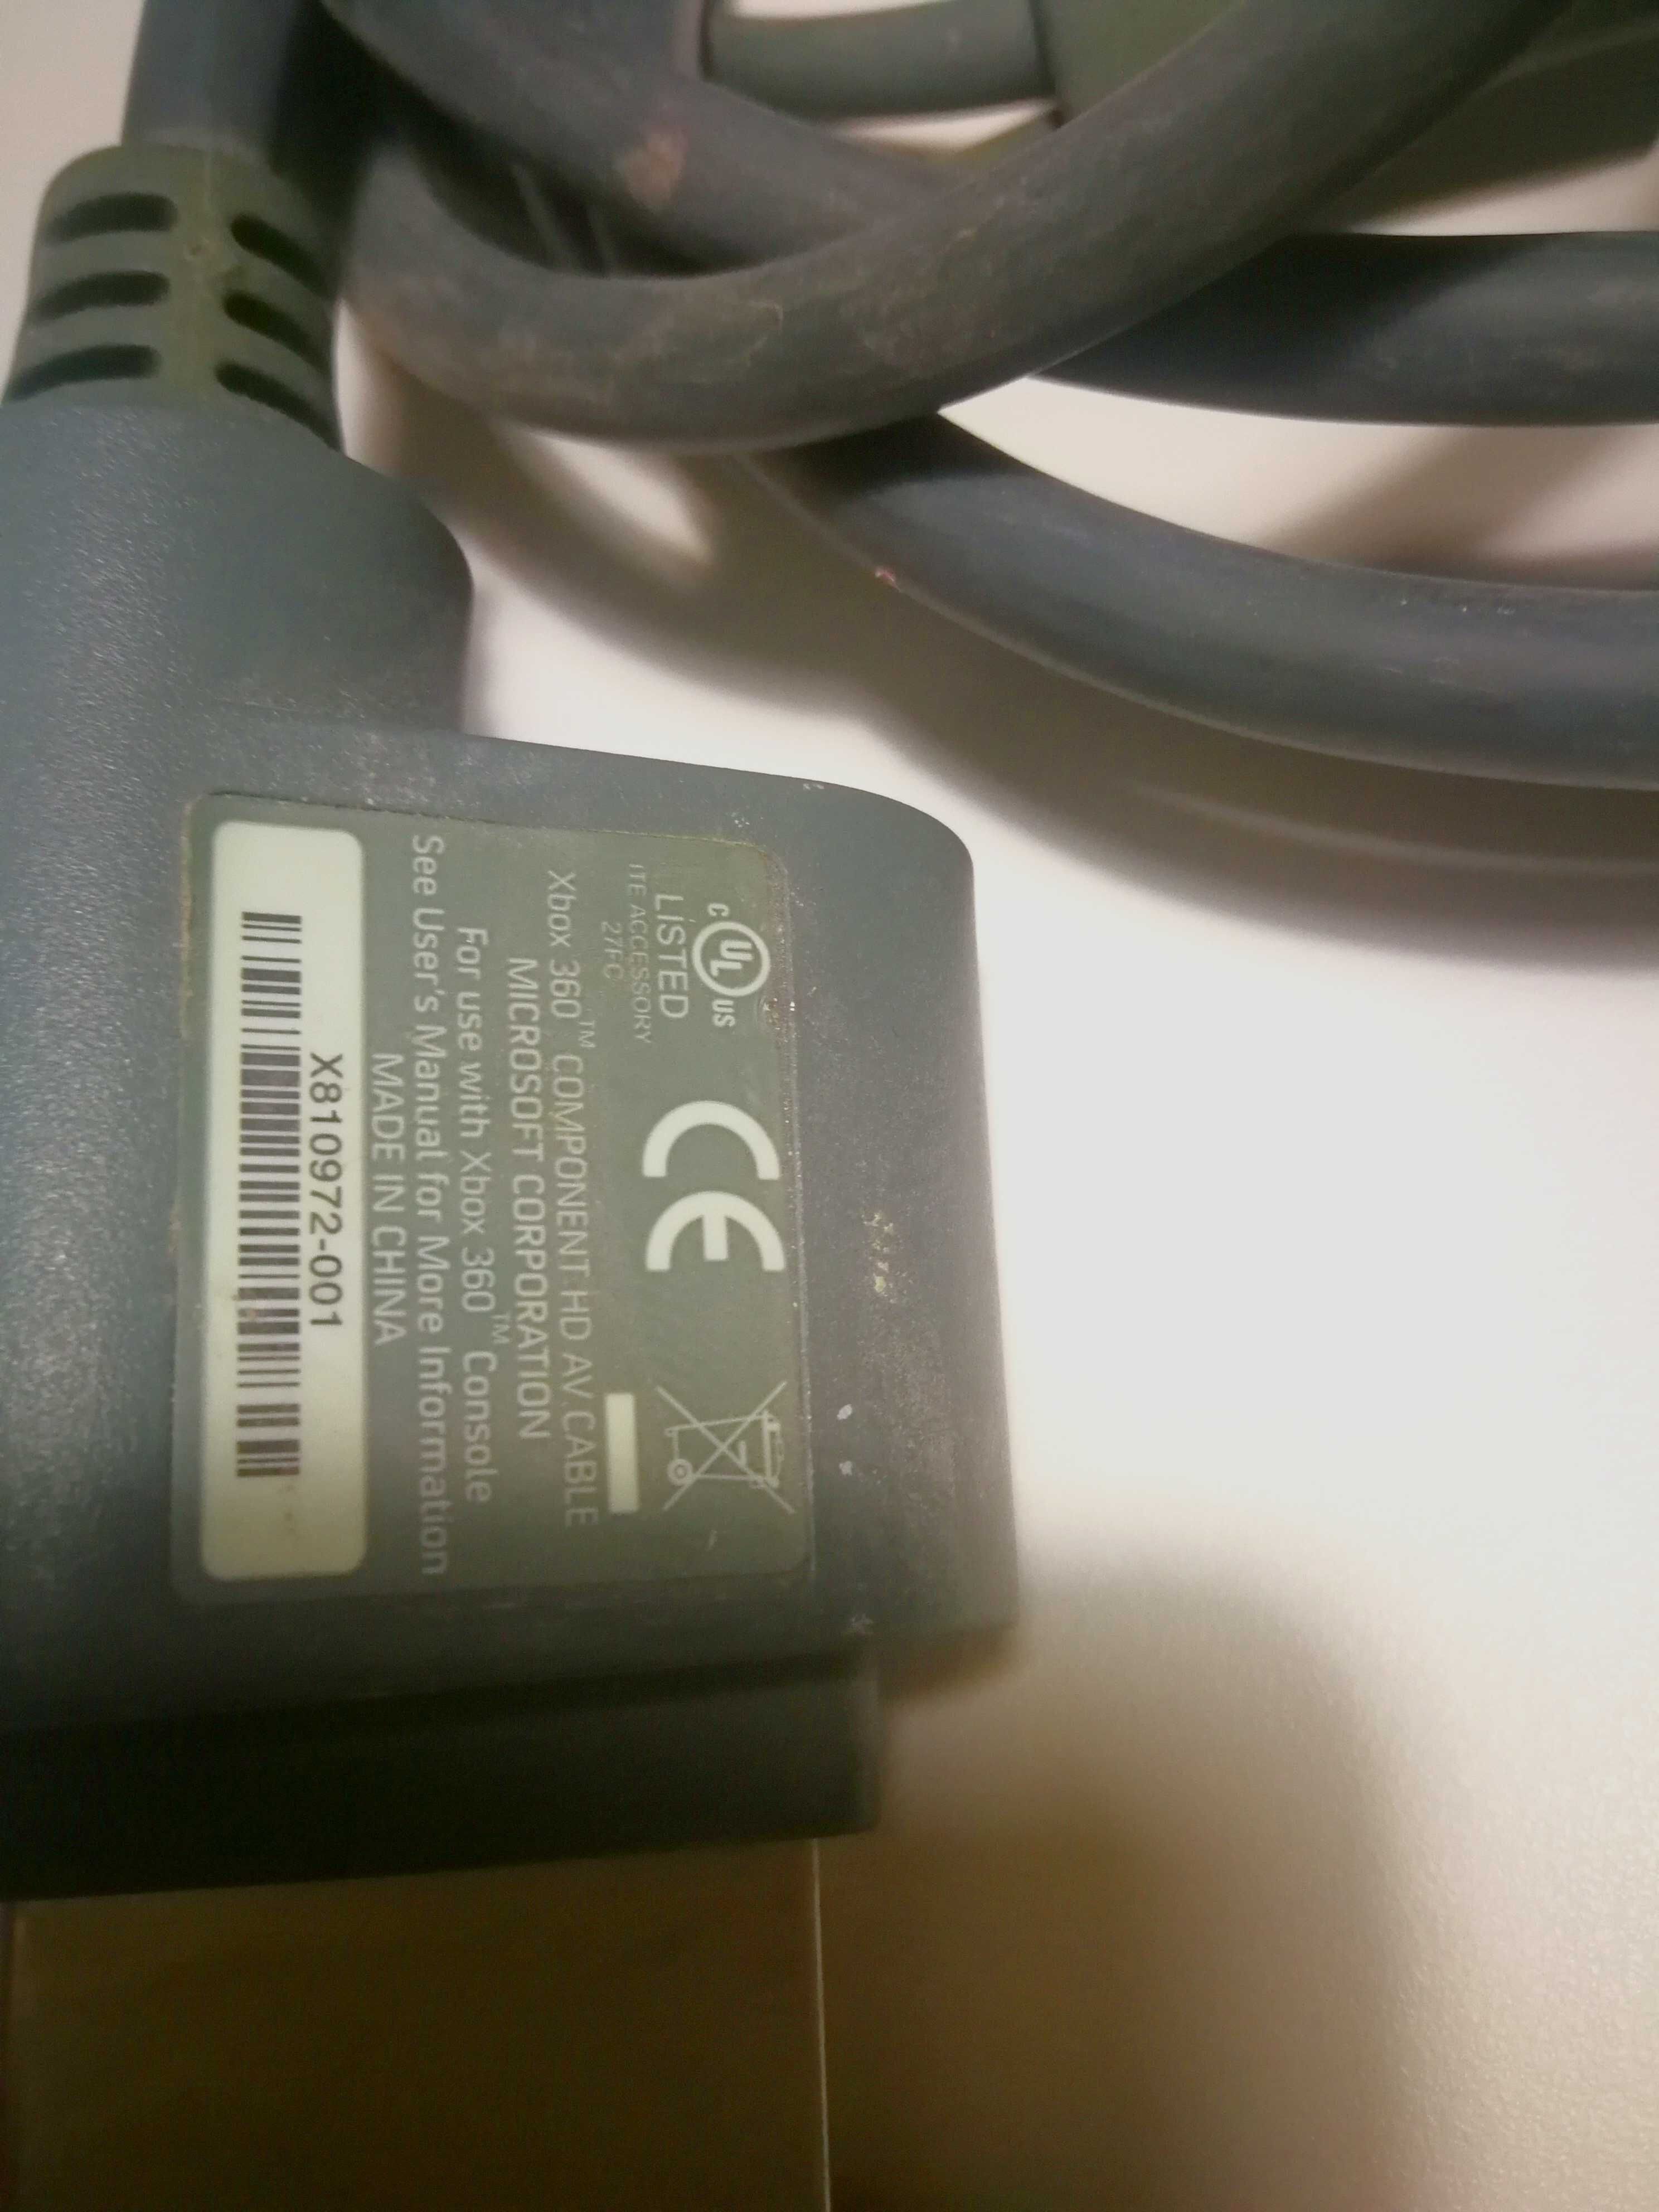 Oryginalny kabel Component HD do Xboxa 360 / Kabel HD do Xboxa 360